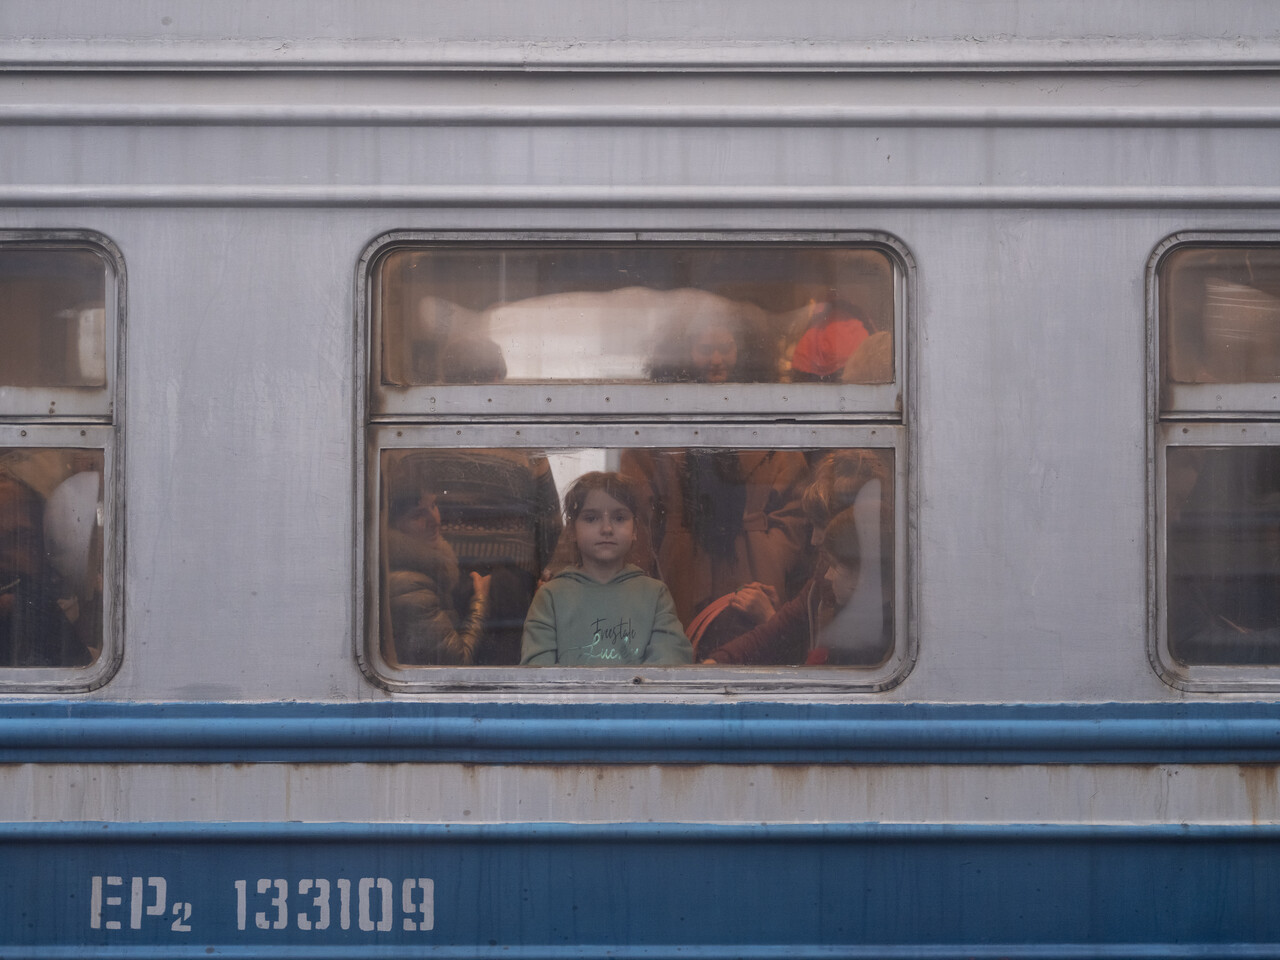 3월 5일 우크라이나 르비우역에서 대기중인 프셰미실행 기차 안에서 어린 소녀가 창밖을 바라보고 있다. ⓒ 장진영